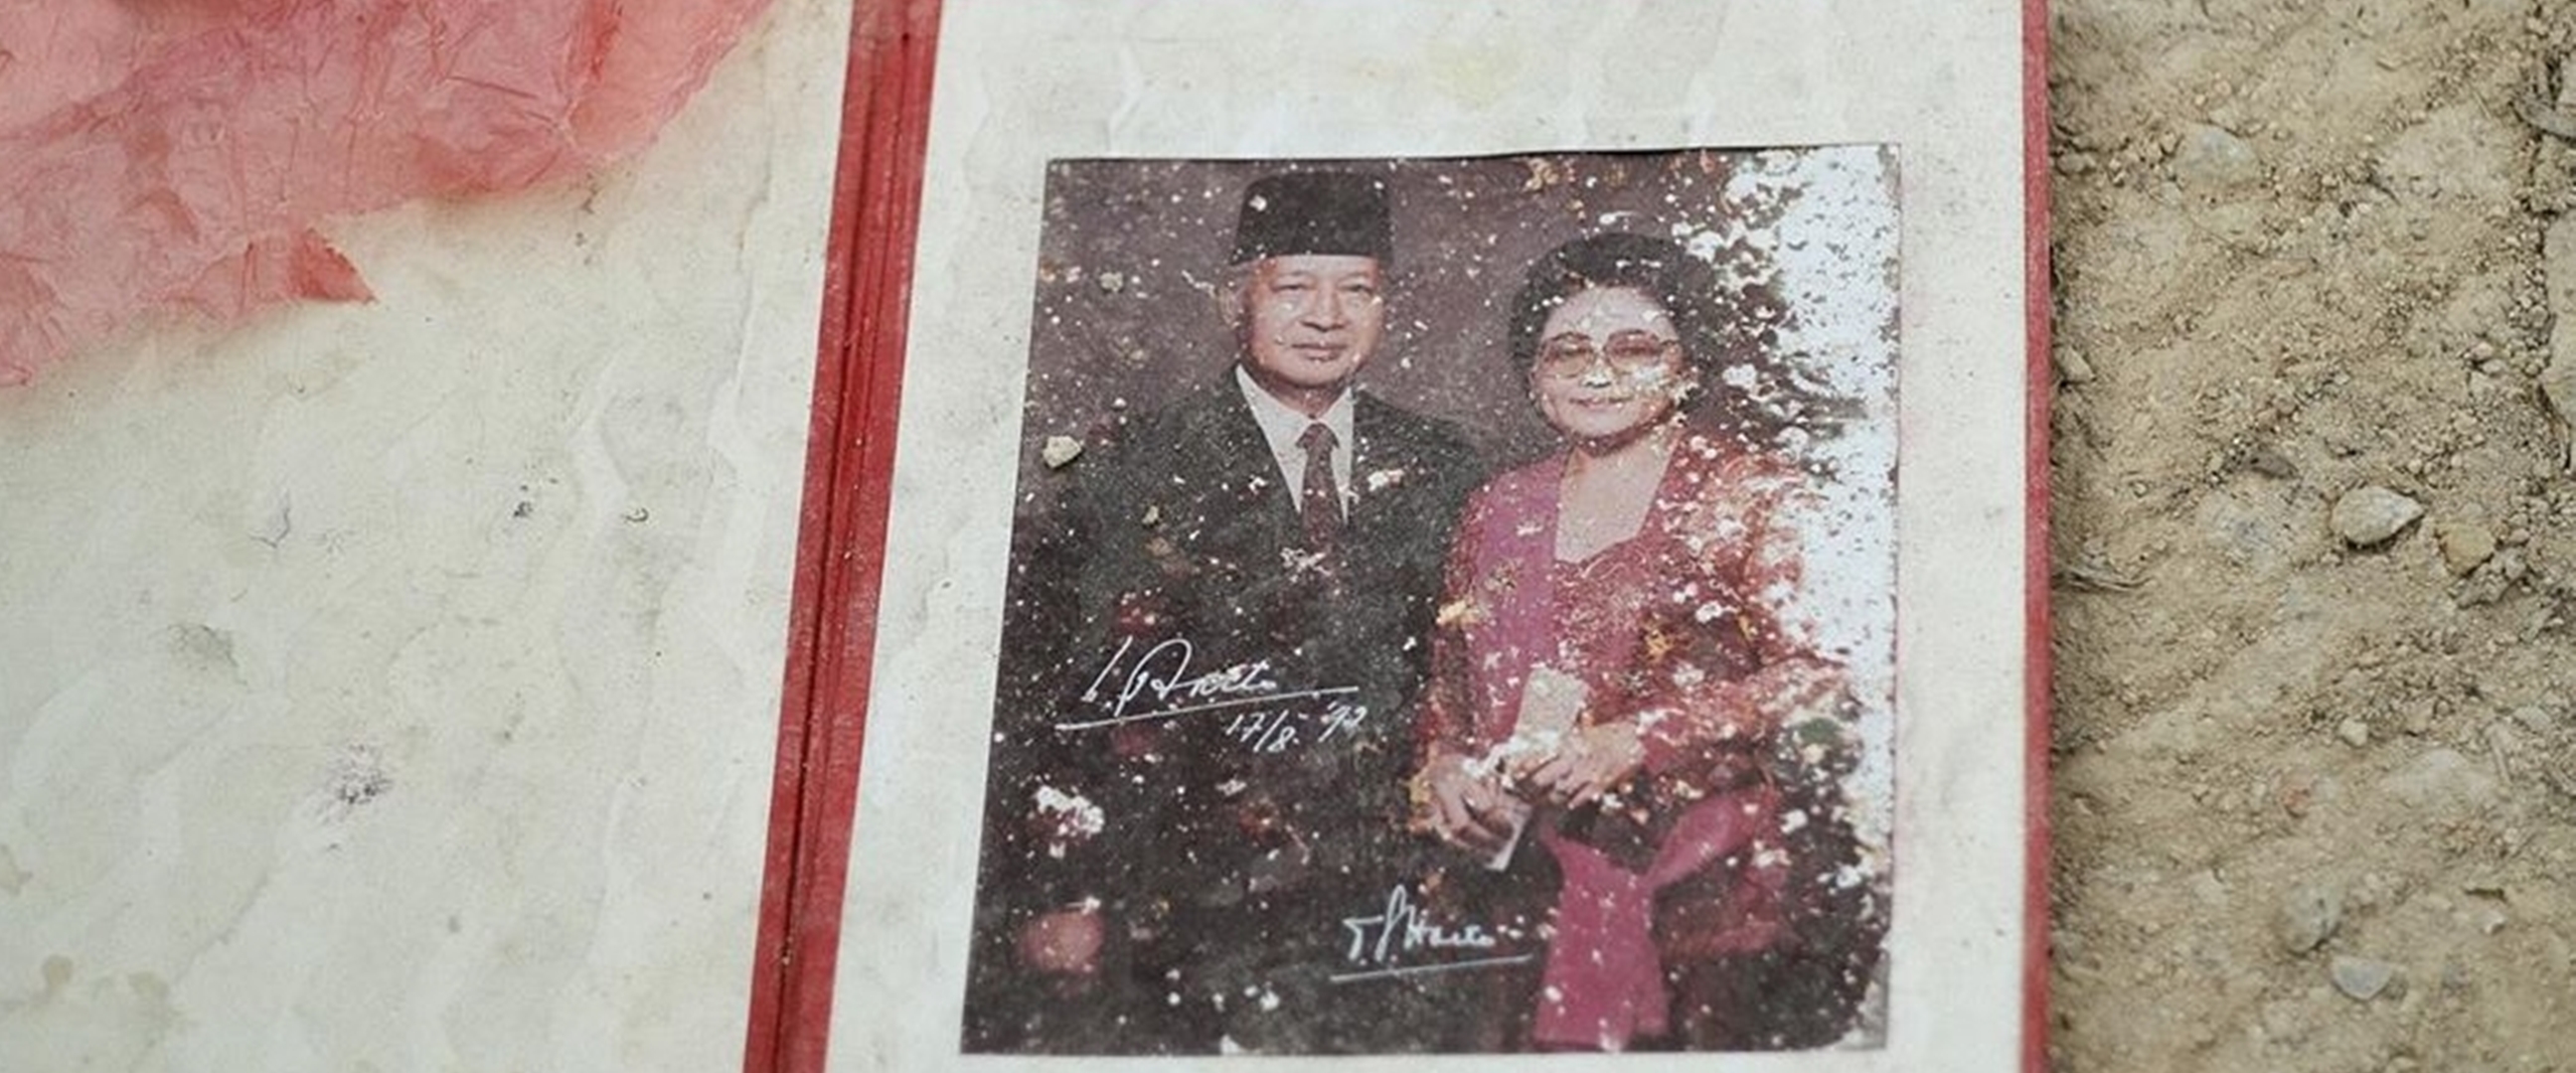 Tompi sedih lihat foto Soeharto & Ibu Tien terbuang di tempat sampah